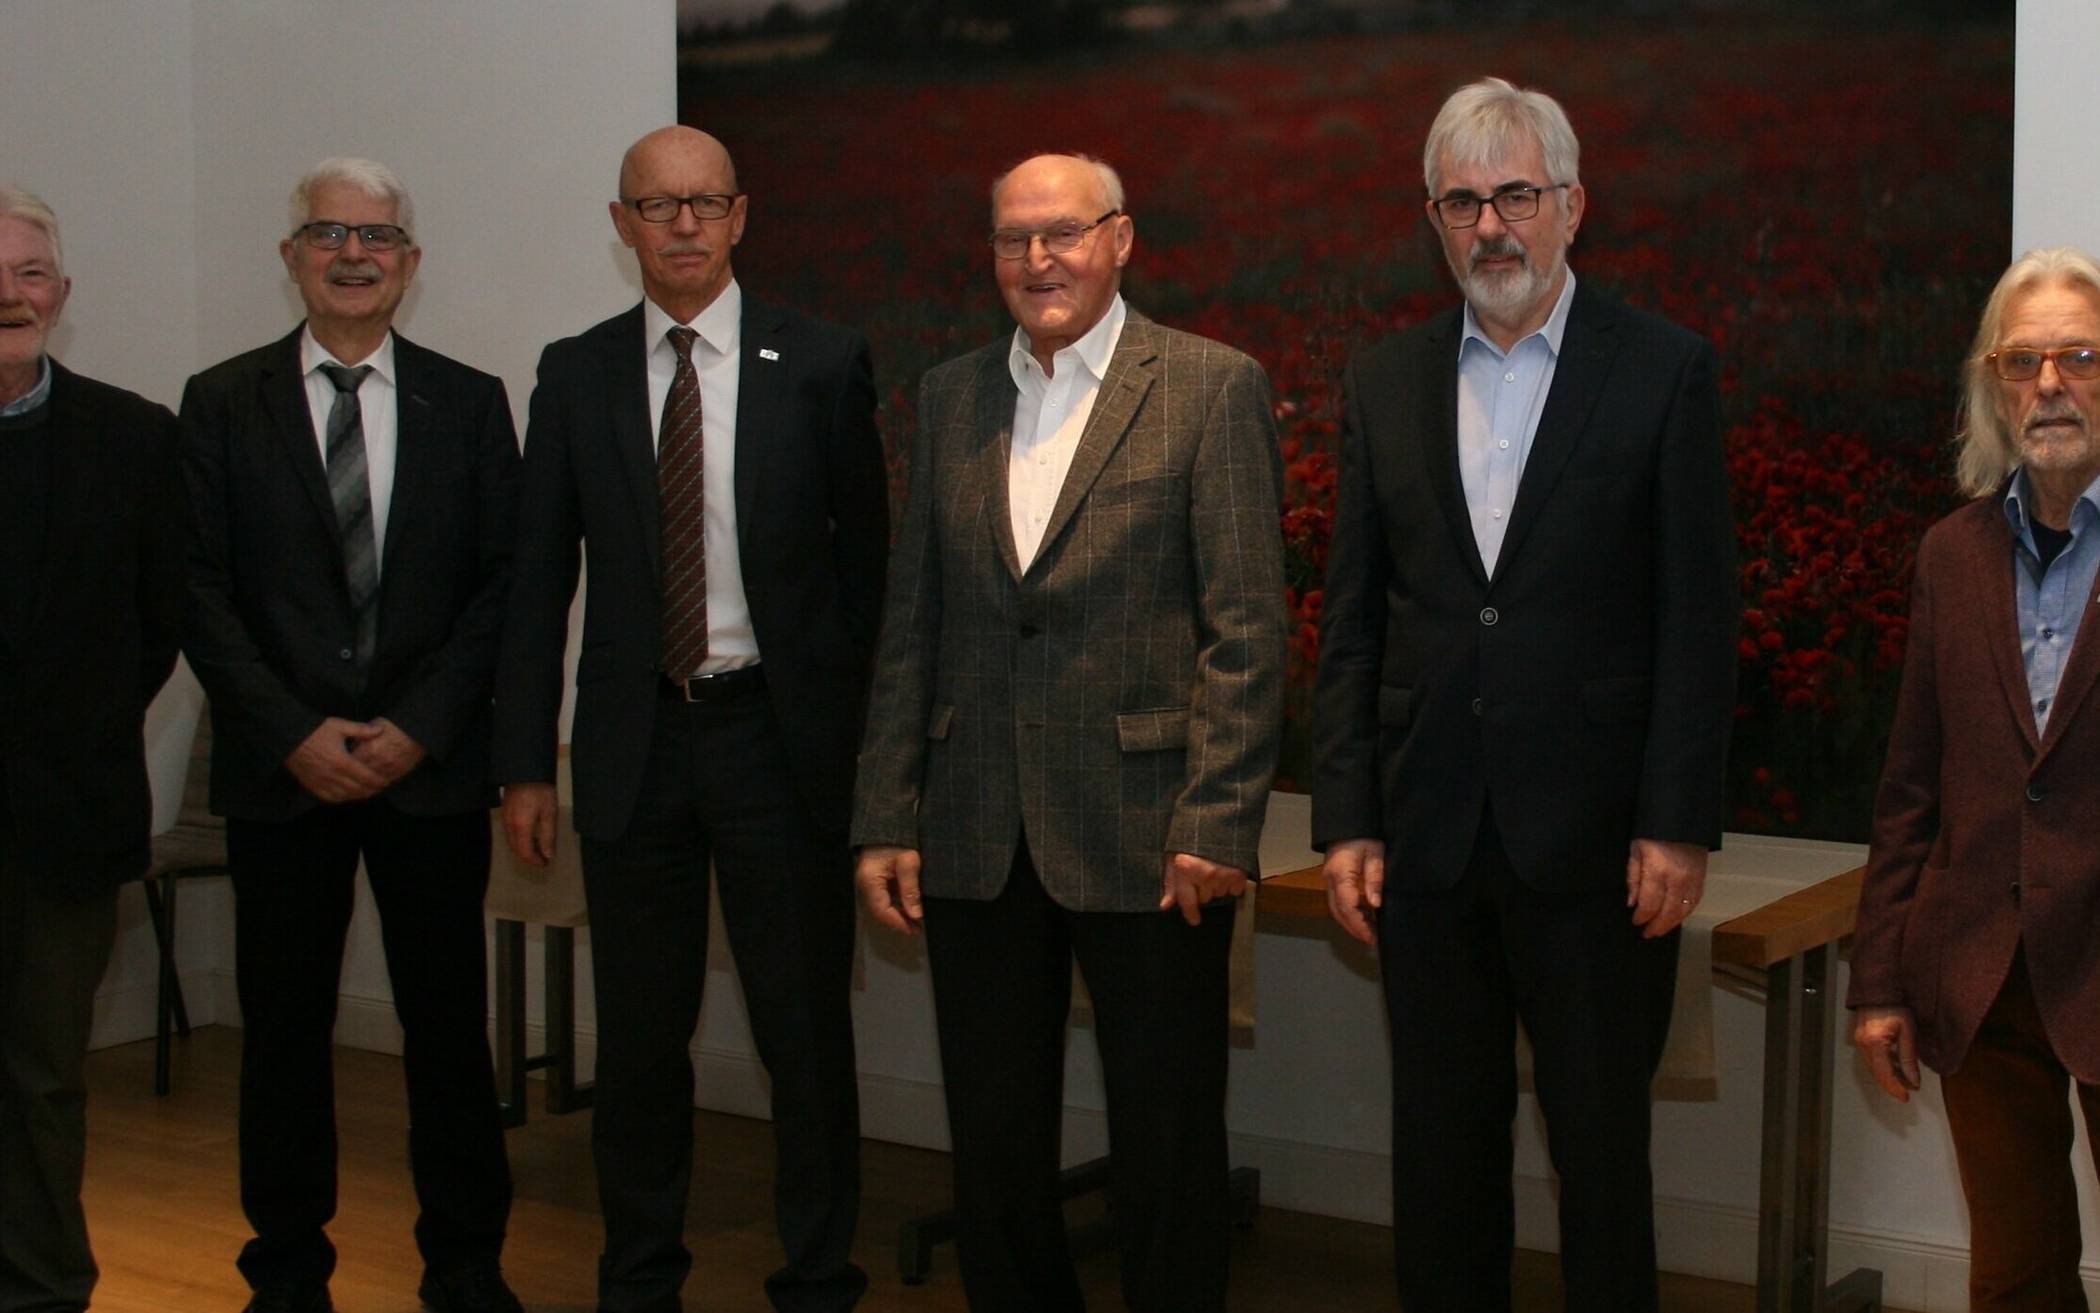  Norbert Esser, Oswald Duda, Harald Zillikens, Karl-Heinz Ehms, Dr. Helmut Löwenich, Reiner Lange, Helmut Kreutz kamen zur Verleihung des Jüchen Talers zusammen.  